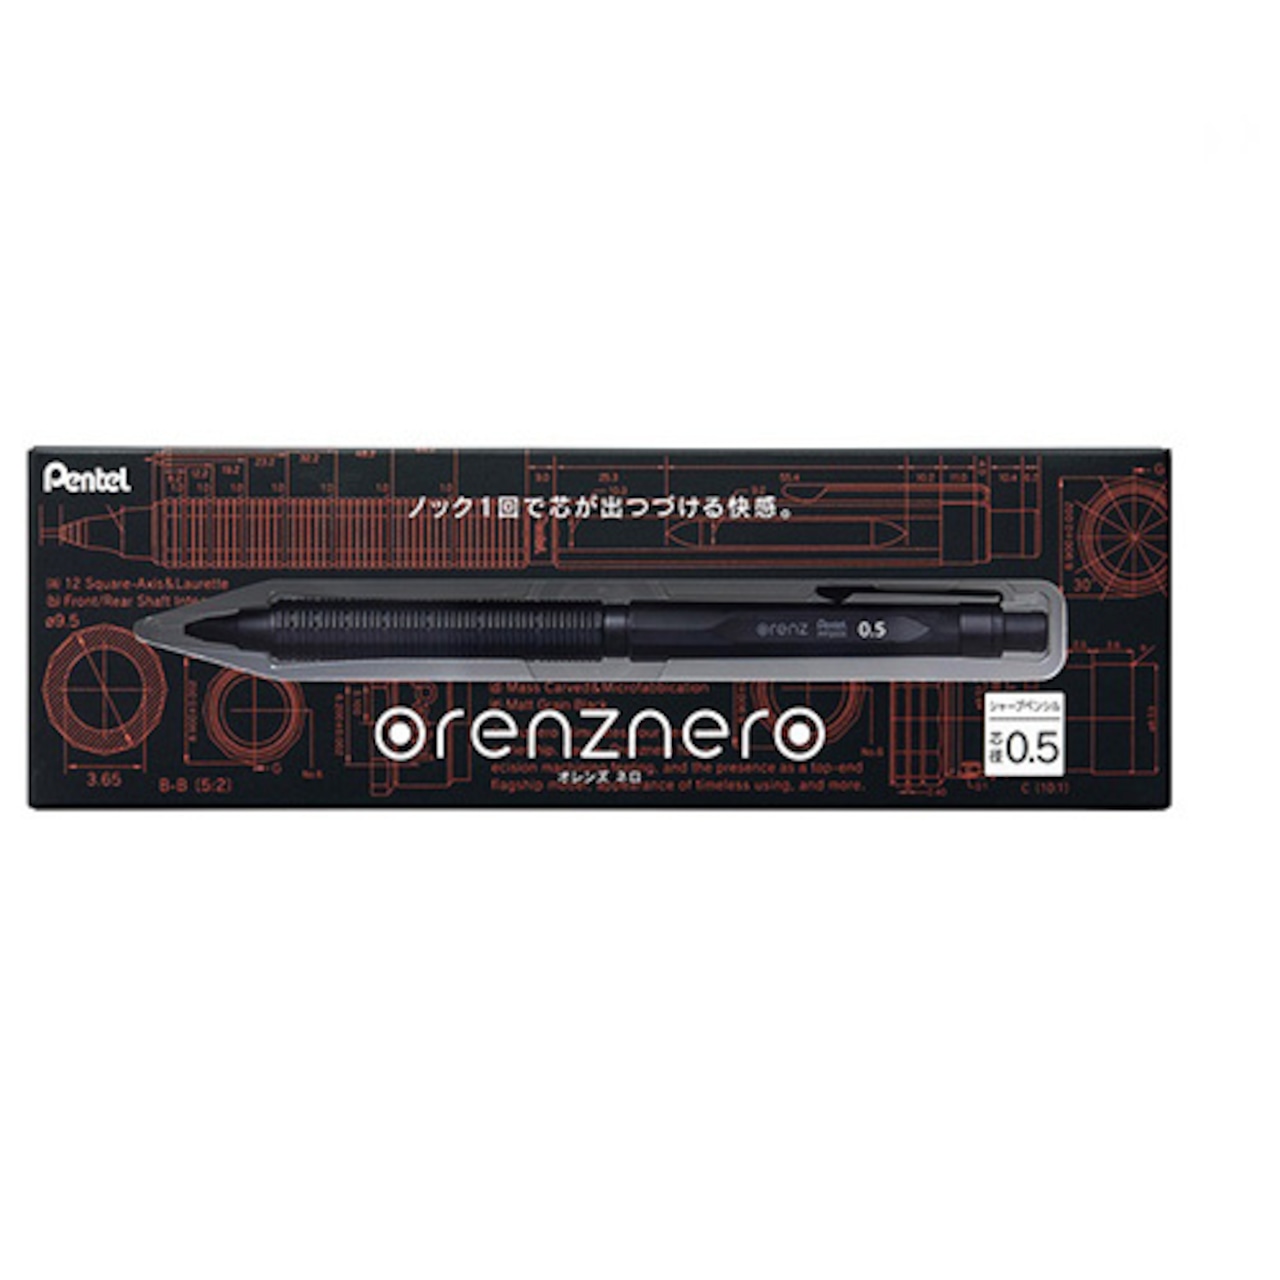 シャープペンシル orenznero 0.5mm ブラック